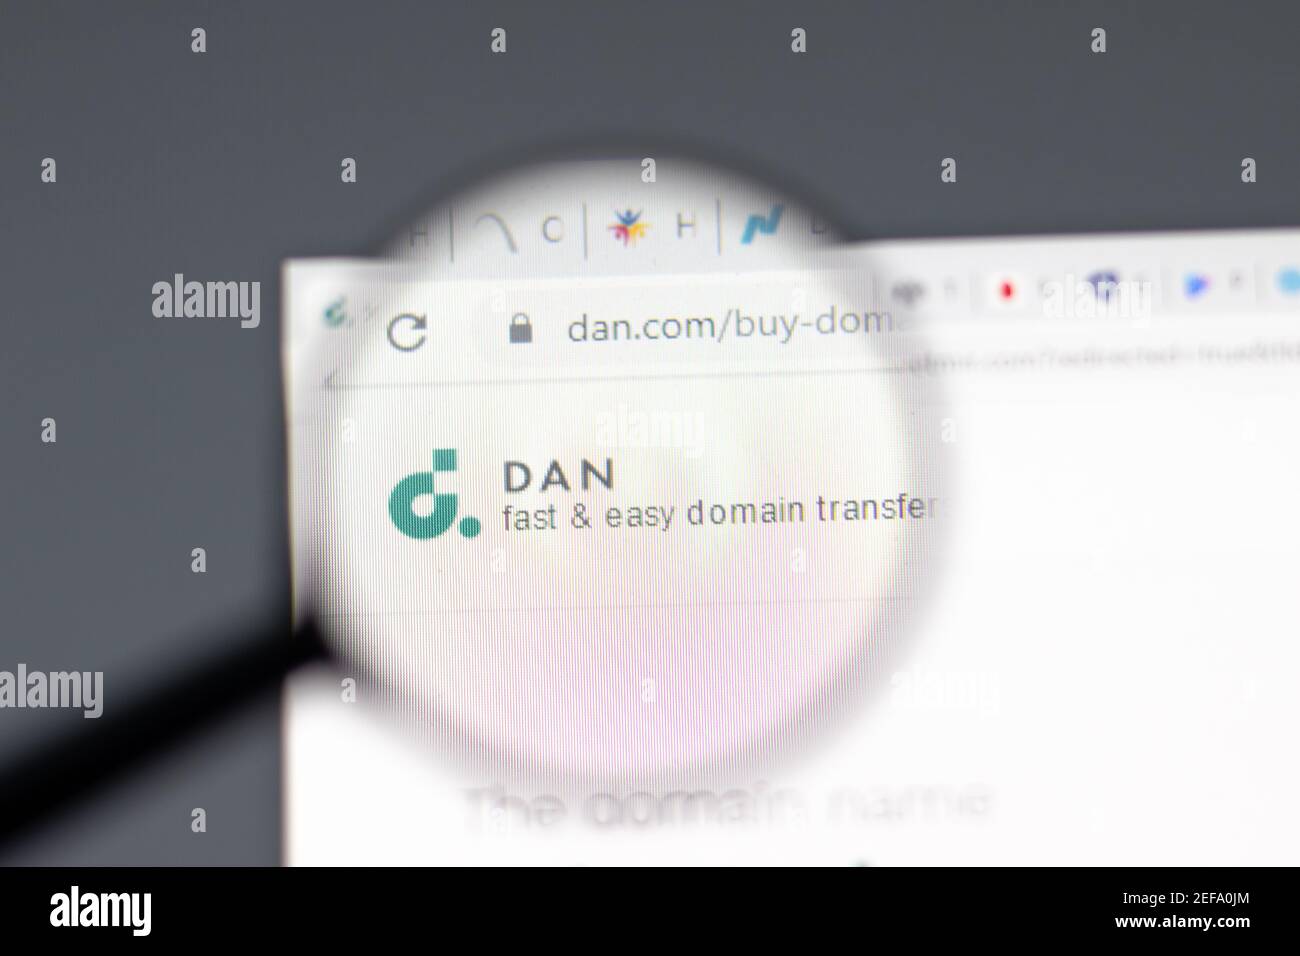 New York, USA - 15 Febbraio 2021: Sito web Dan Domain Transfer in browser con logo aziendale, editoriale illustrativo Foto Stock